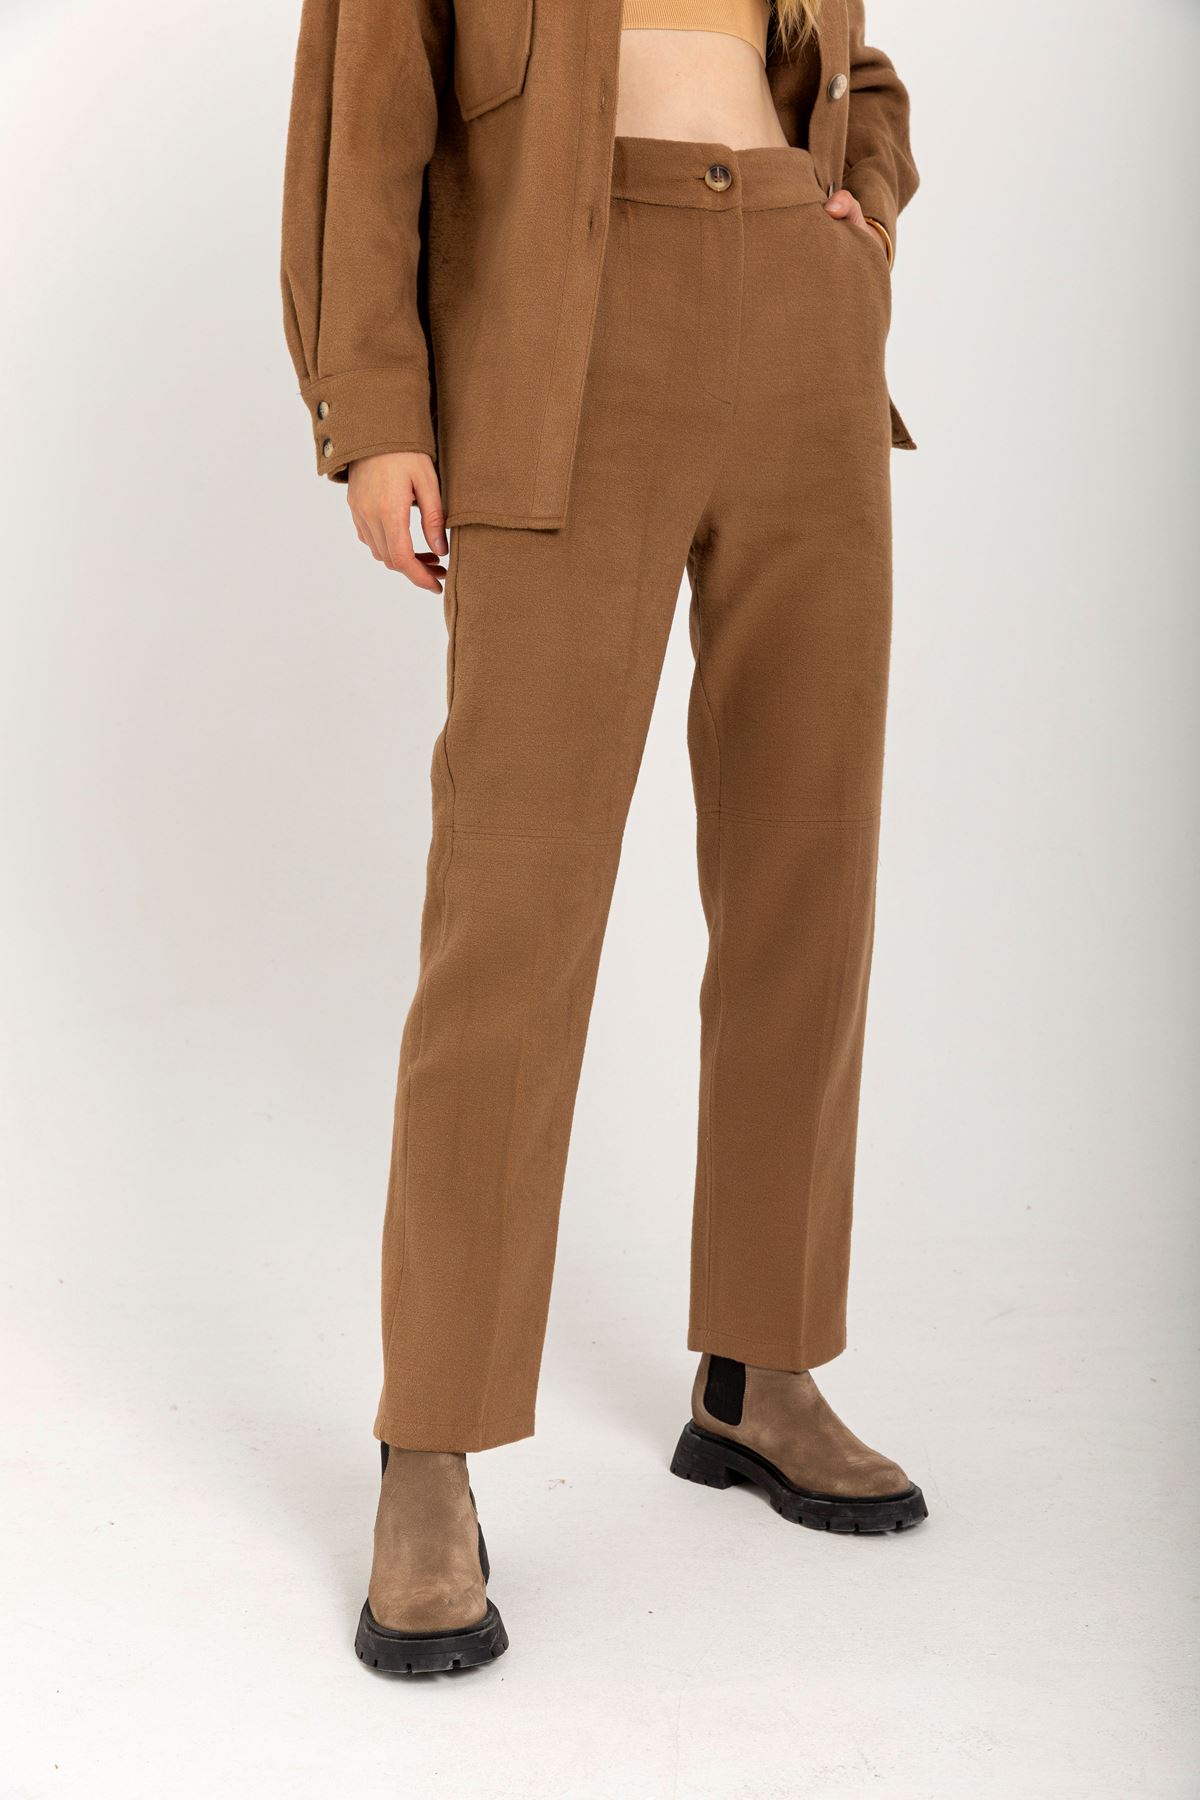 Long Classical Women'S Trouser - Light Brown